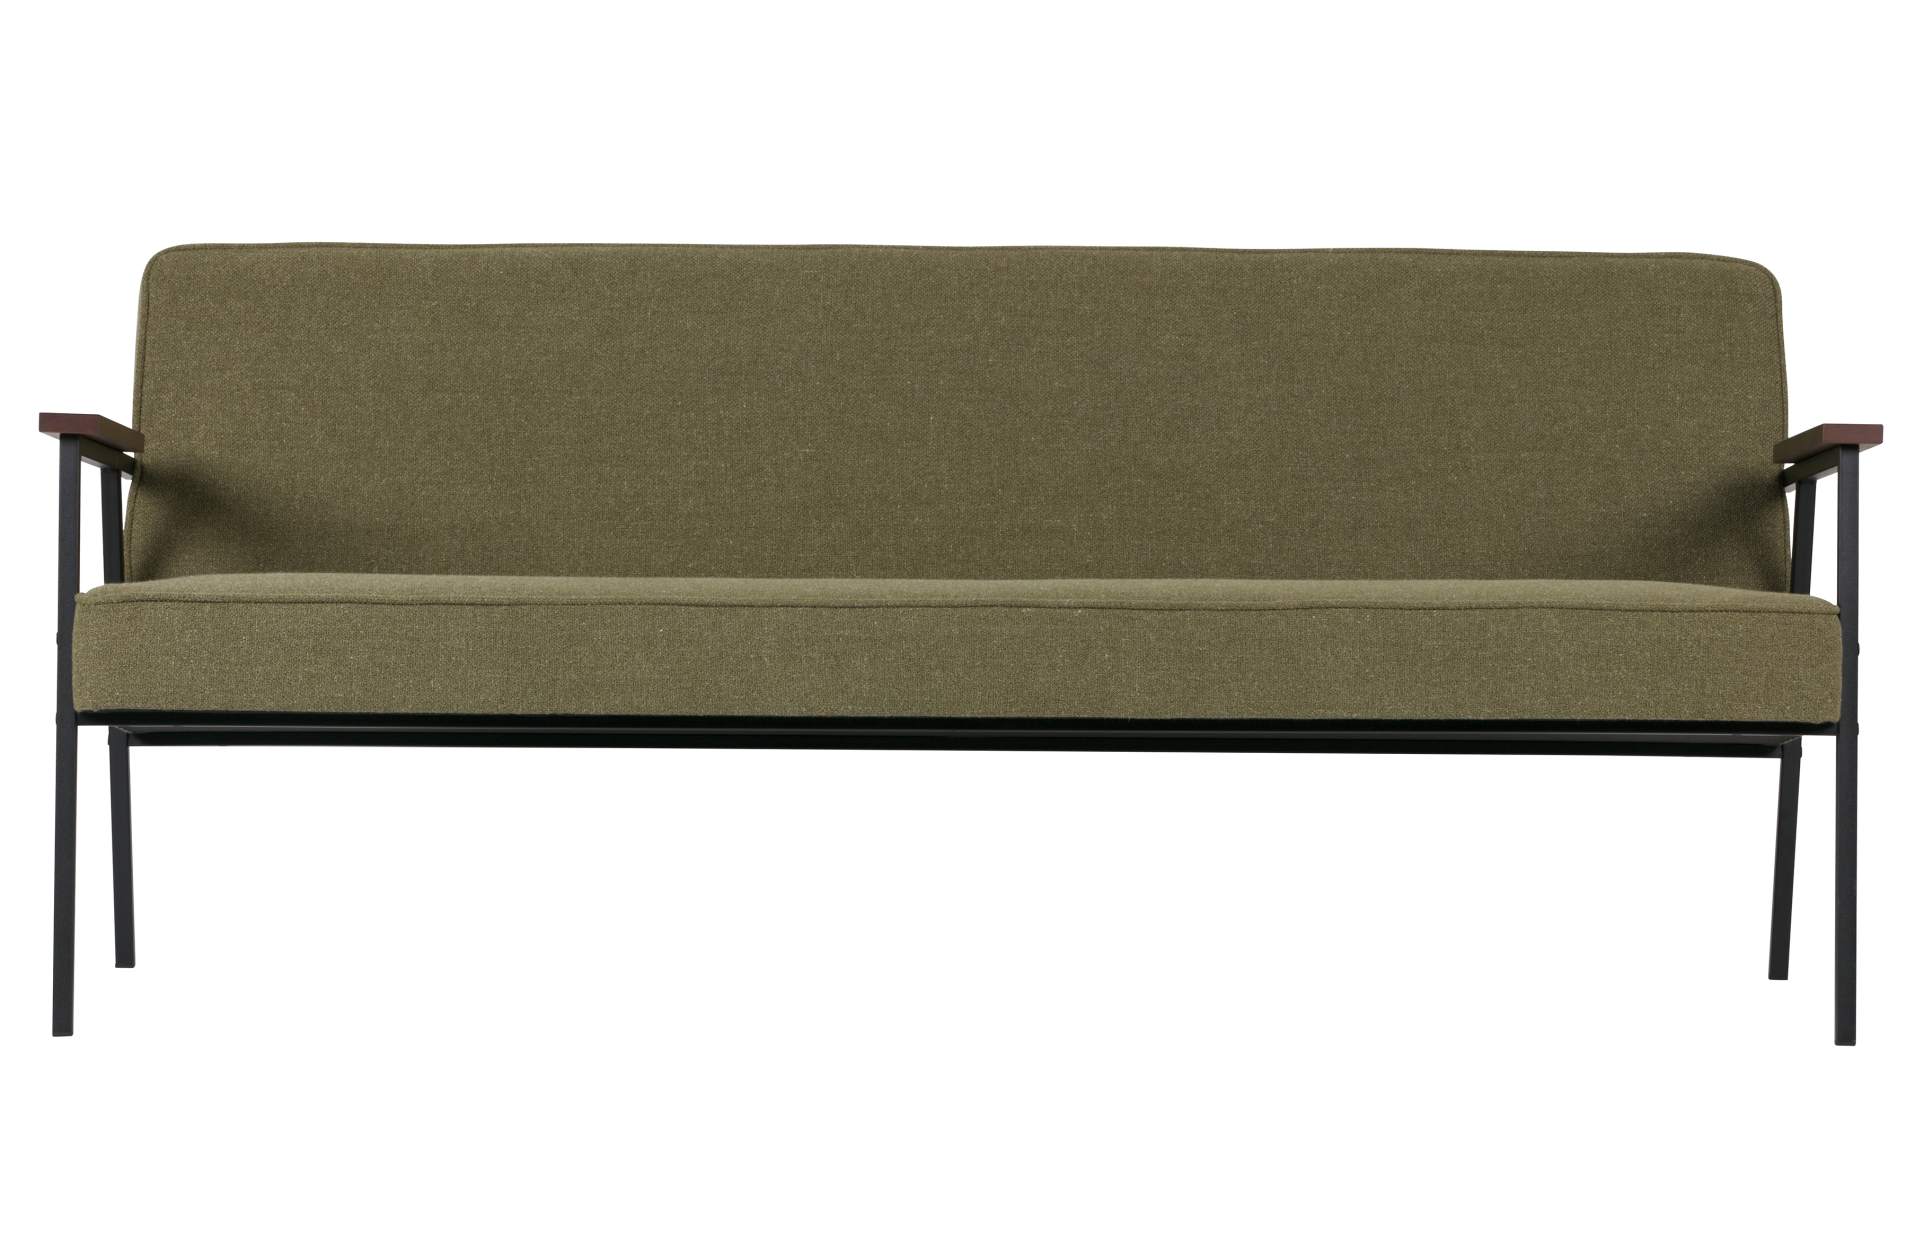 Das 2-Sitzer Sofa Elizabeth überzeugt mit seinem Retro Design. Gefertigt wurde aus einem Stoff Bezug, welcher einen Olive Grünen Farbton besitzt. Das Gestell ist aus Metall und ist schwarz.